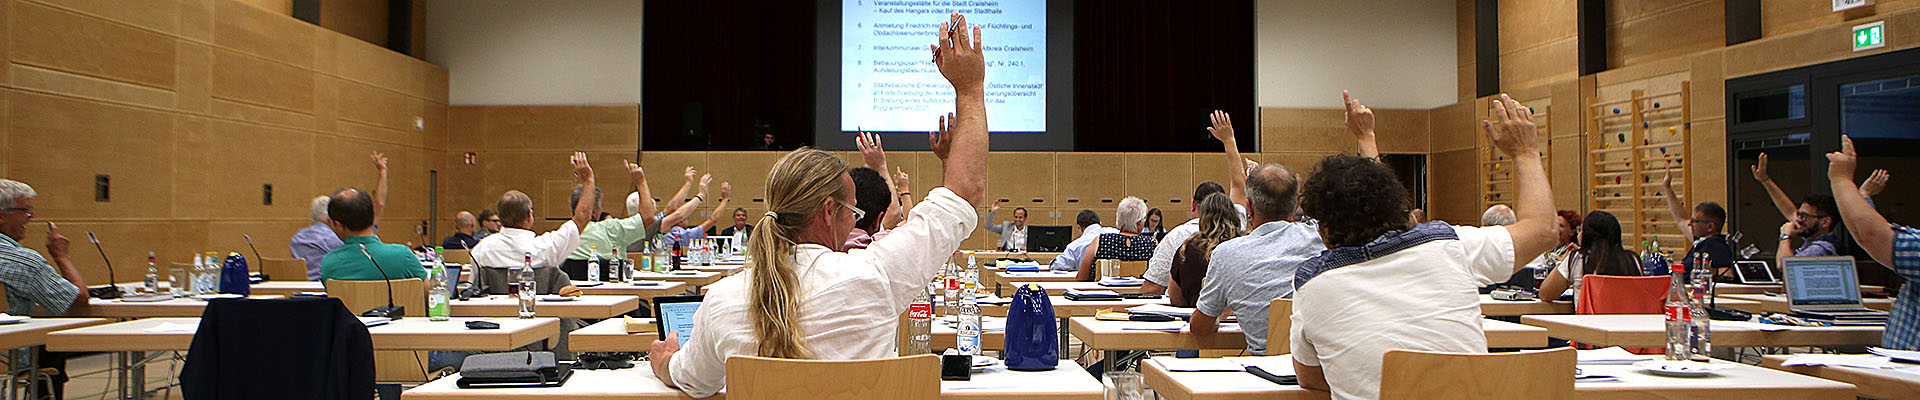 Bild aus einer Gemeinderatssitzung